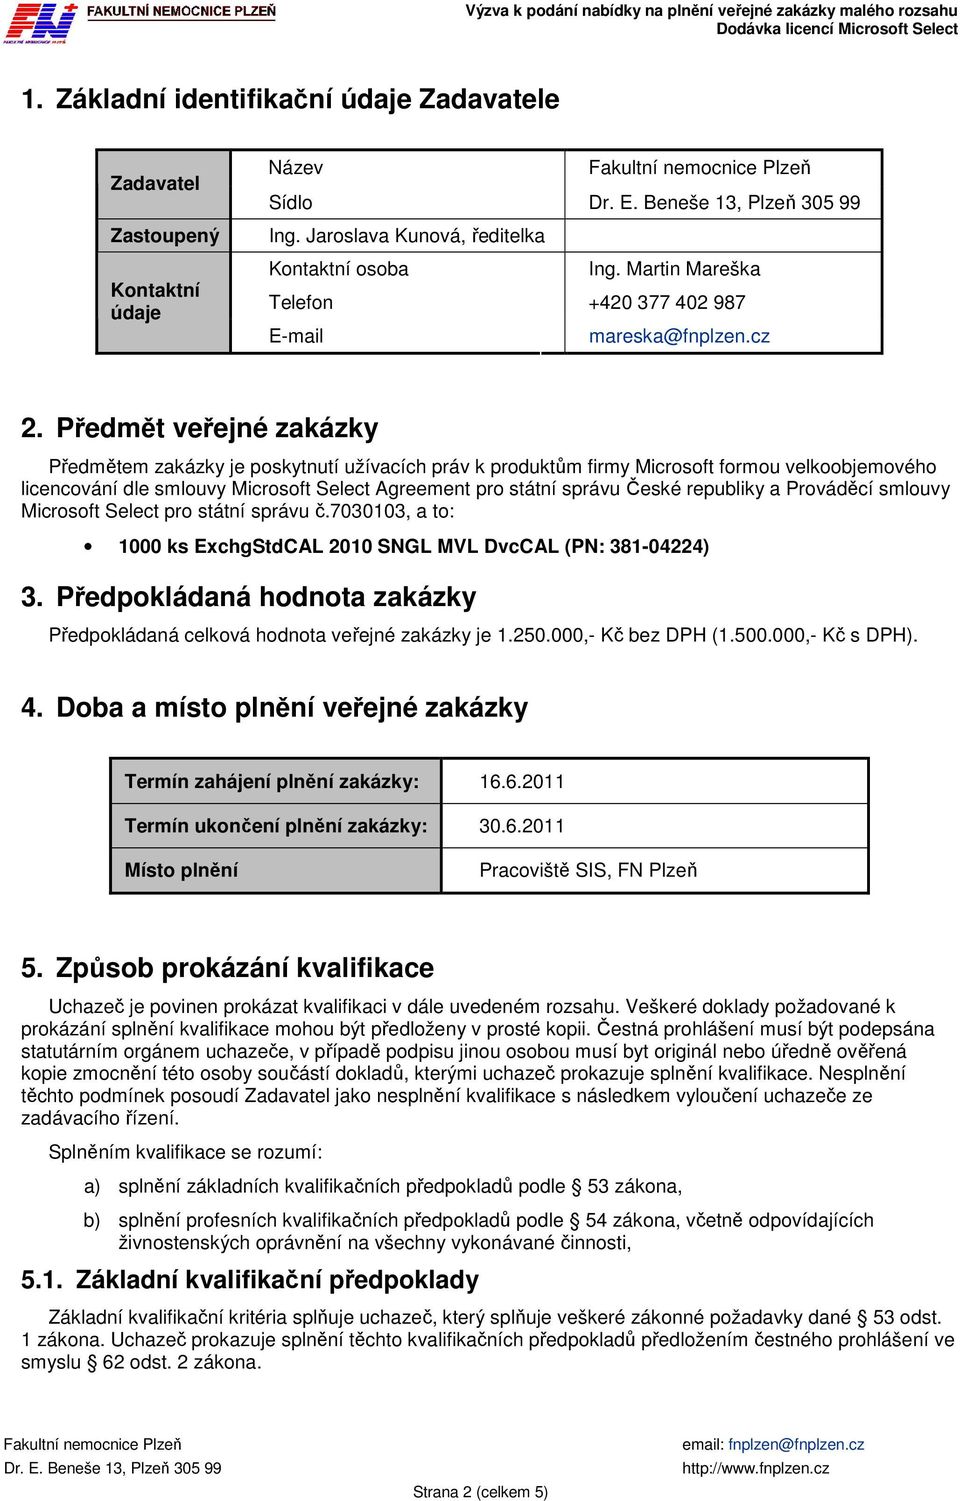 Předmět veřejné zakázky Předmětem zakázky je poskytnutí užívacích práv k produktům firmy Microsoft formou velkoobjemového licencování dle smlouvy Microsoft Select Agreement pro státní správu České